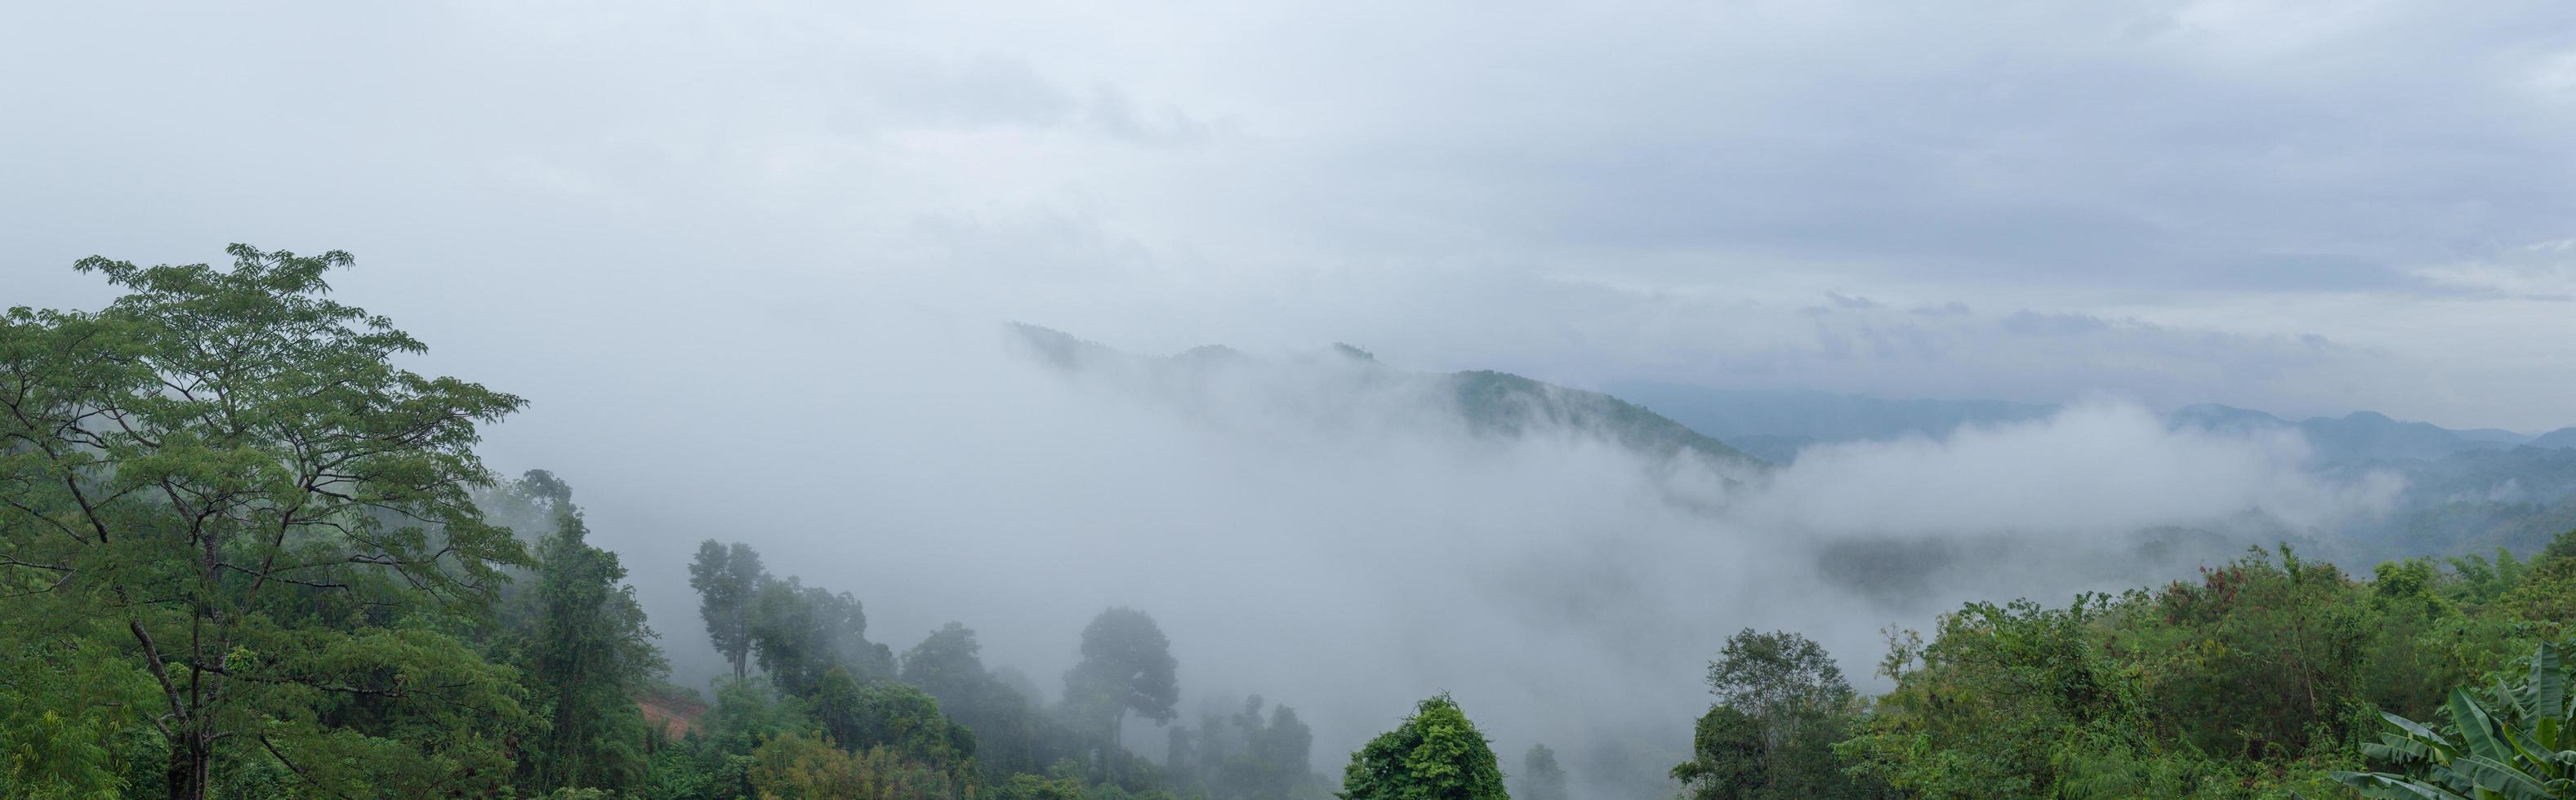 panorama van mist bedekte bomen foto